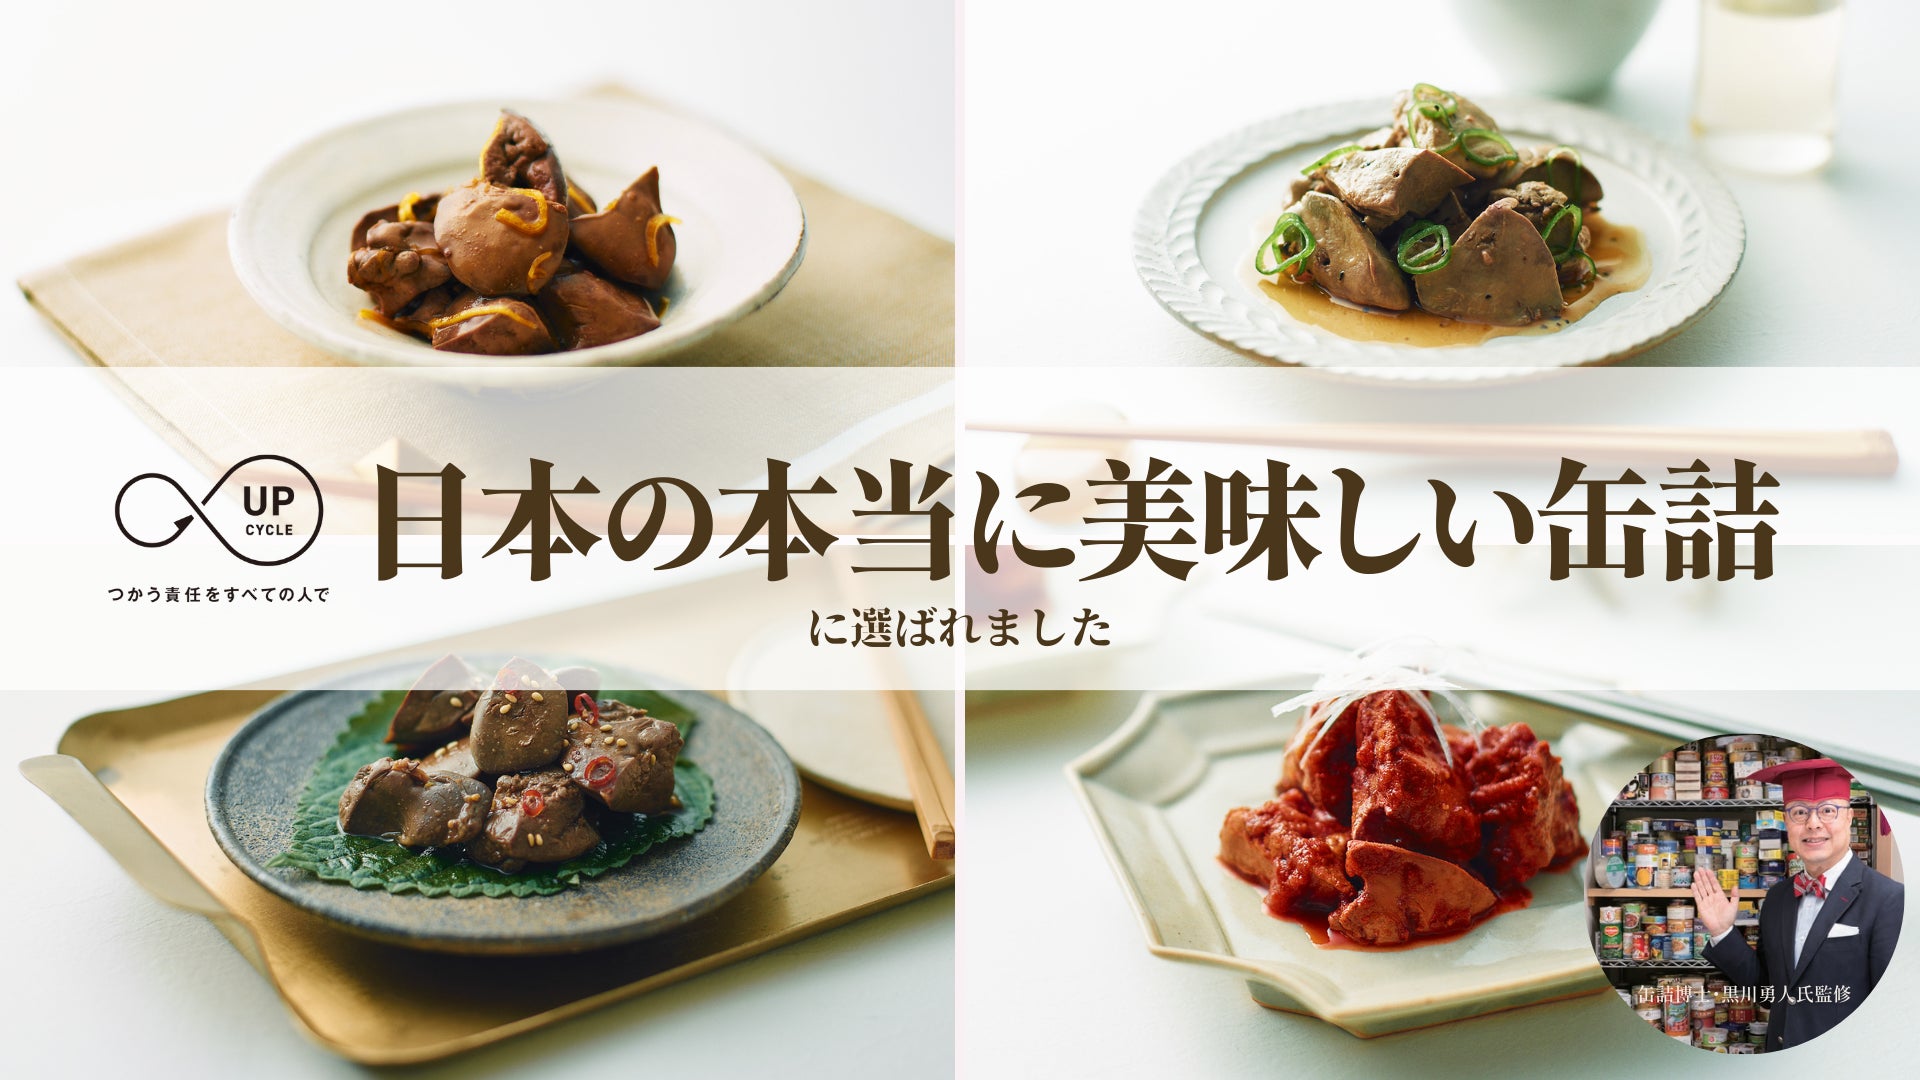 アップサイクル・フード「ふくふくレバー」日本の本当に美味しい缶詰に選出